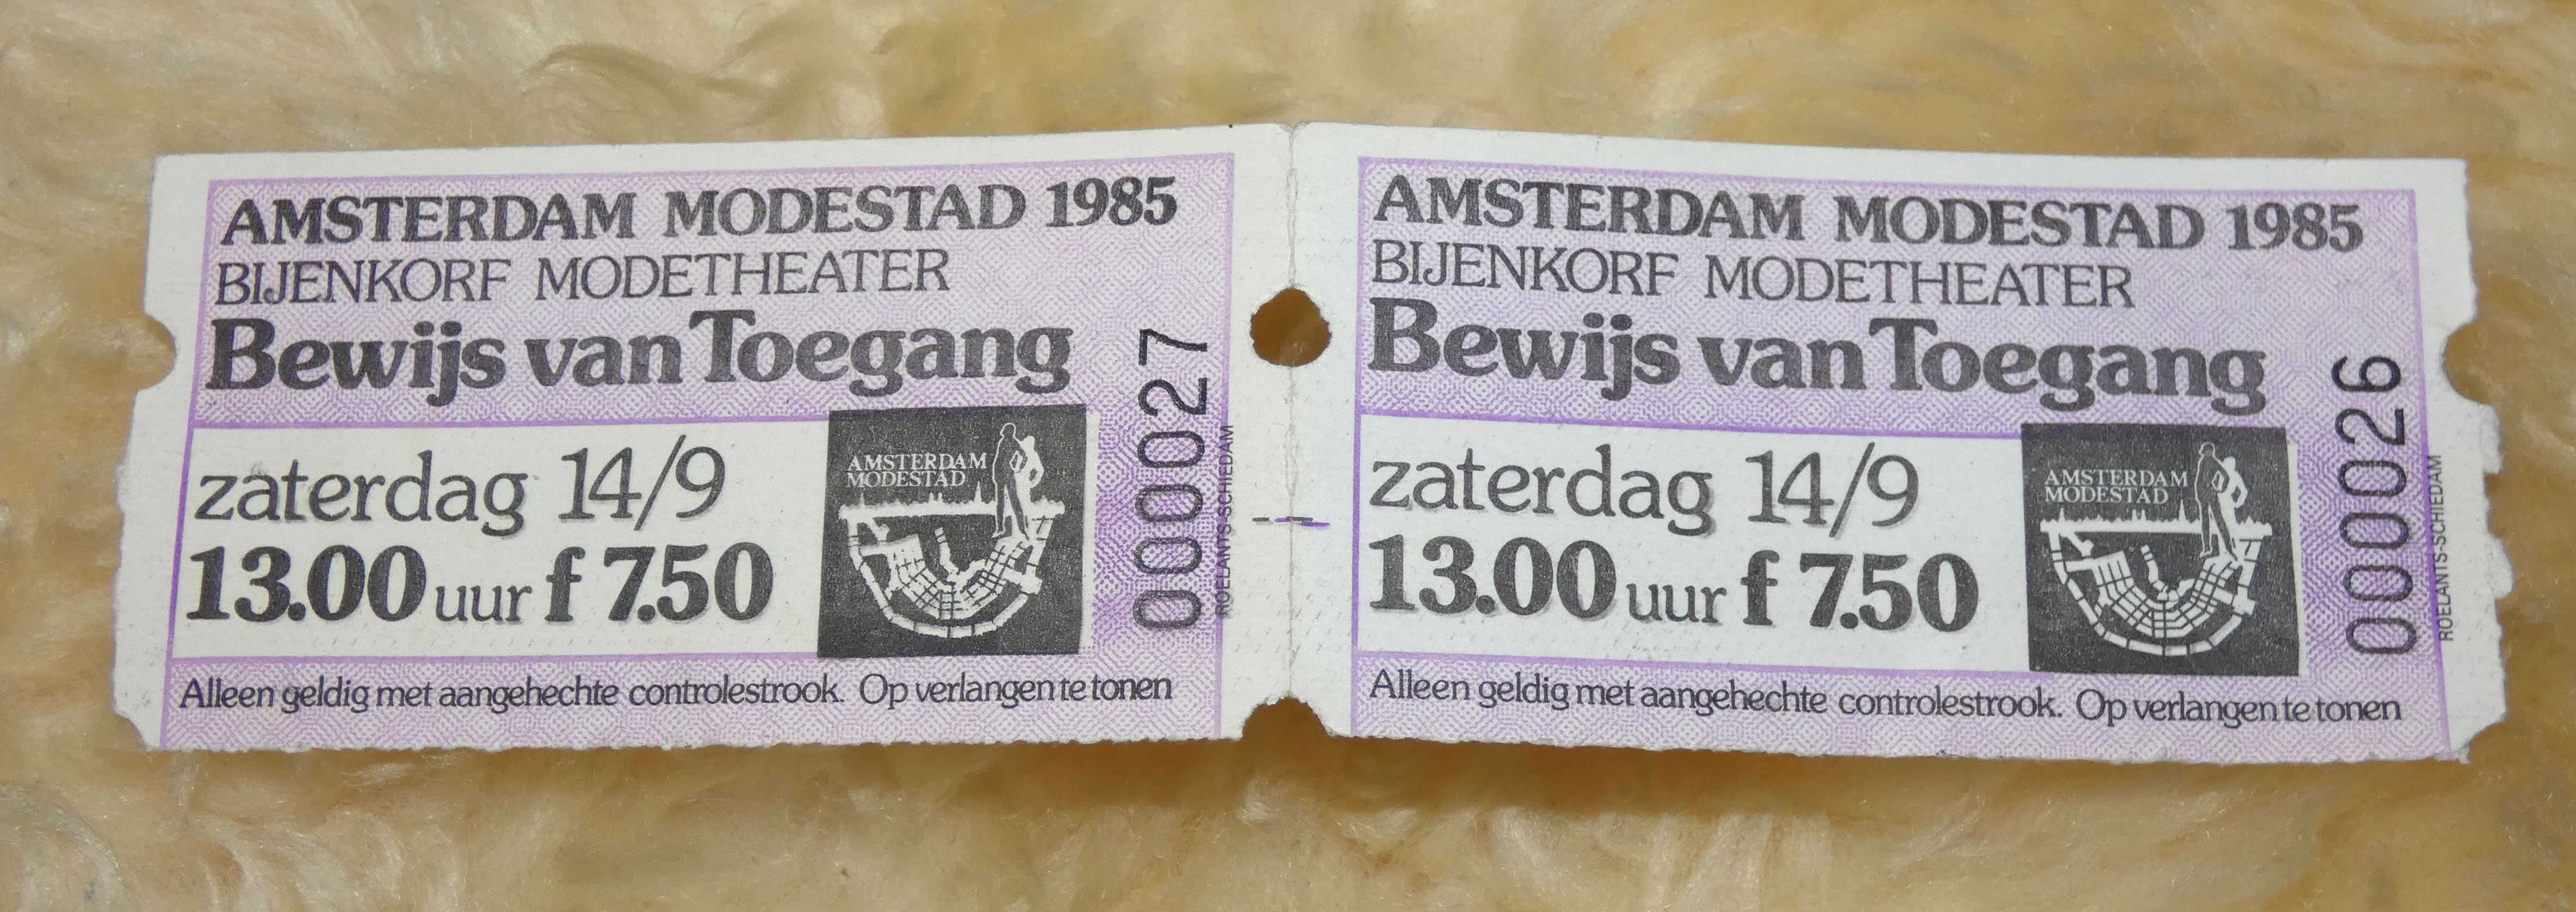 Оригинальный  билет на Bijenkorf Modetheater, 14 сентября 1985 года